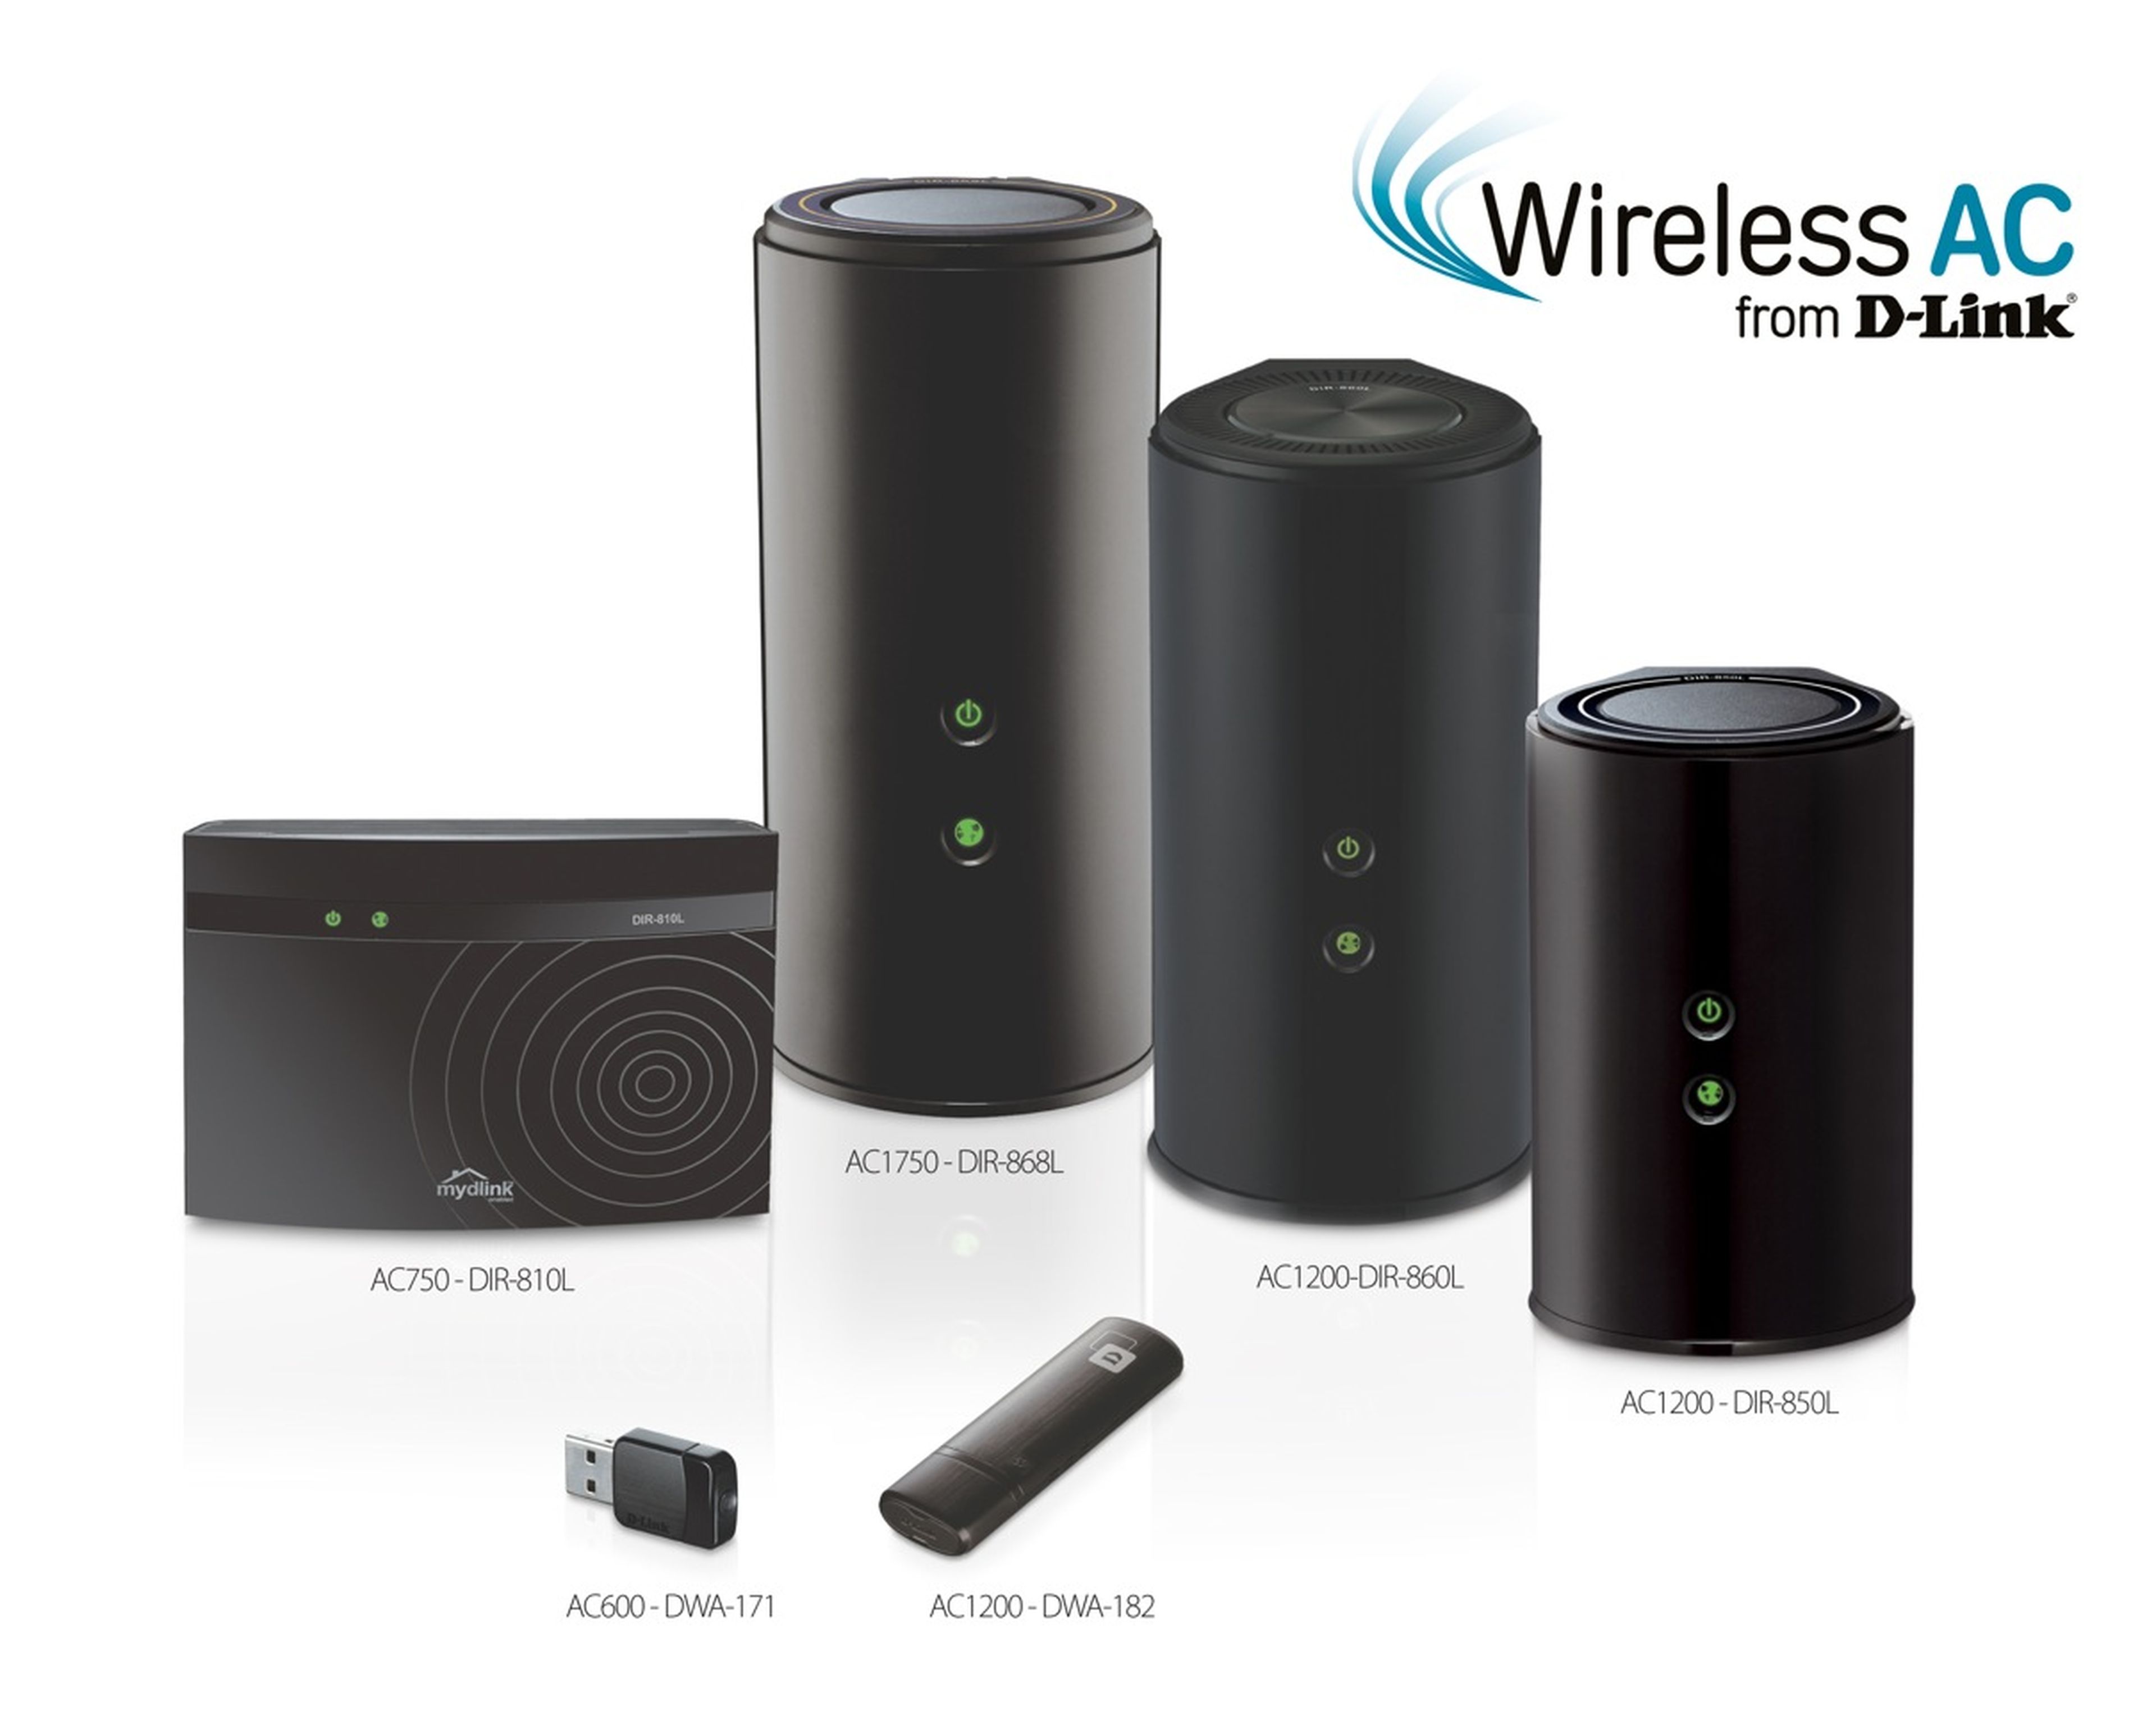 D-Link presenta su gama de routers Cloud WiFi Wireless AC